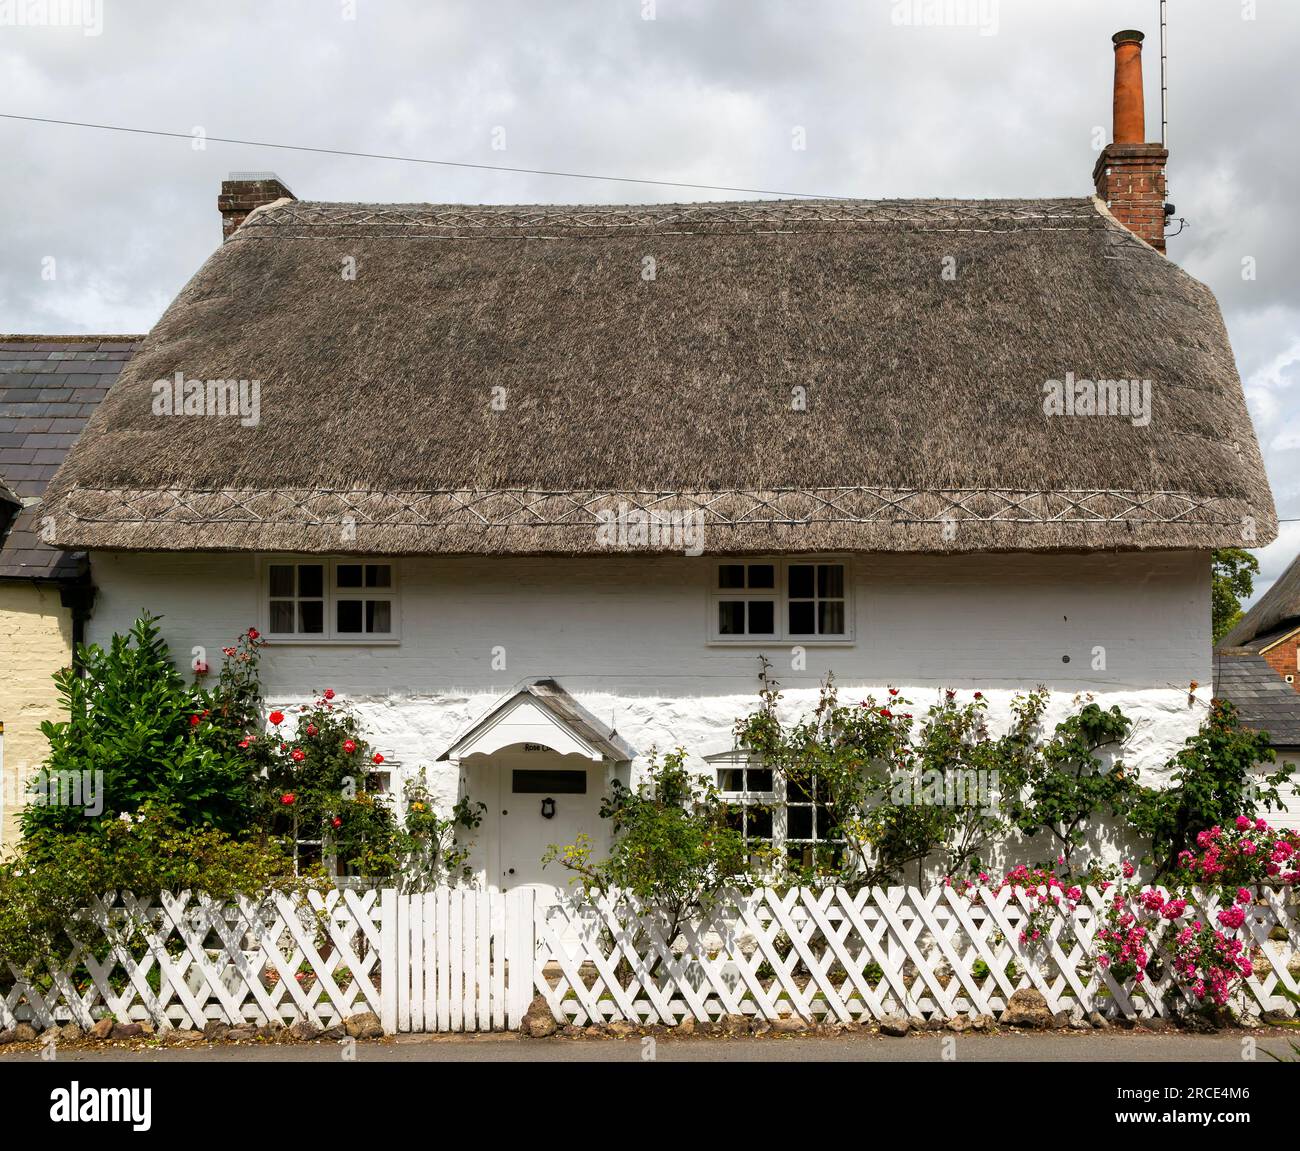 Jolie chaume historique dans le village d'Avebury, Wiltshire, Angleterre, Royaume-Uni Banque D'Images